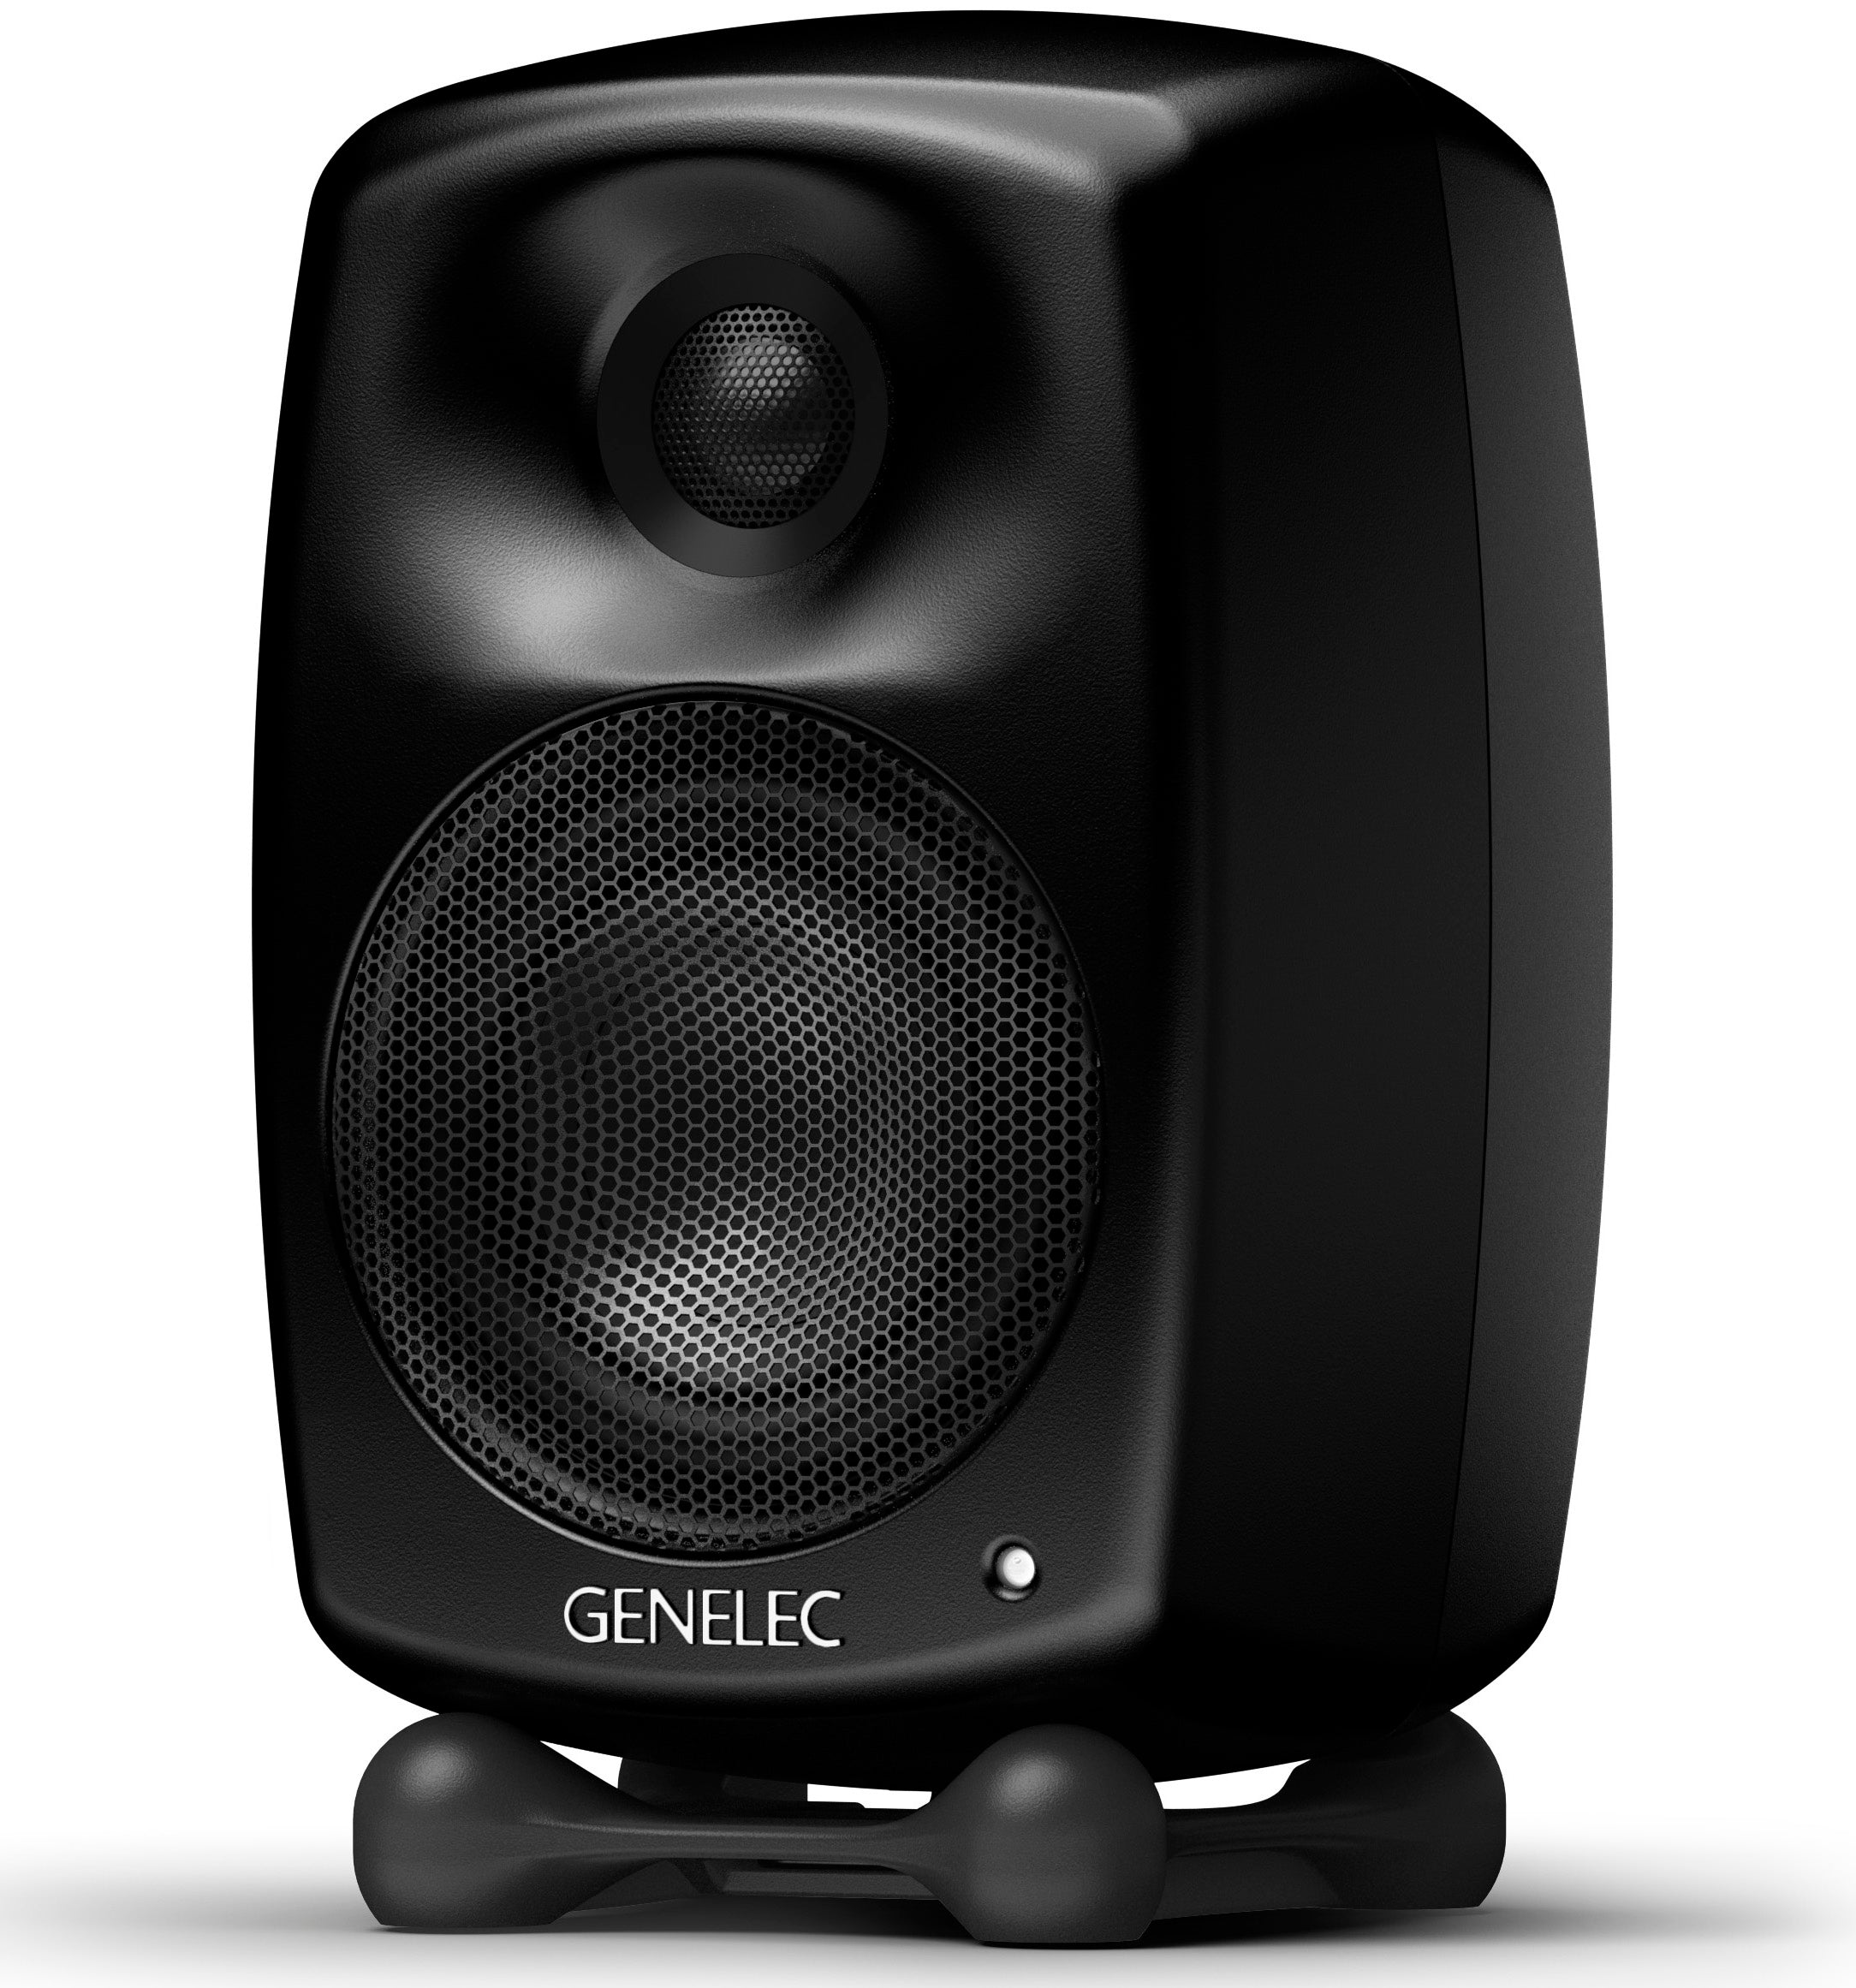 Genelec G Two active speaker